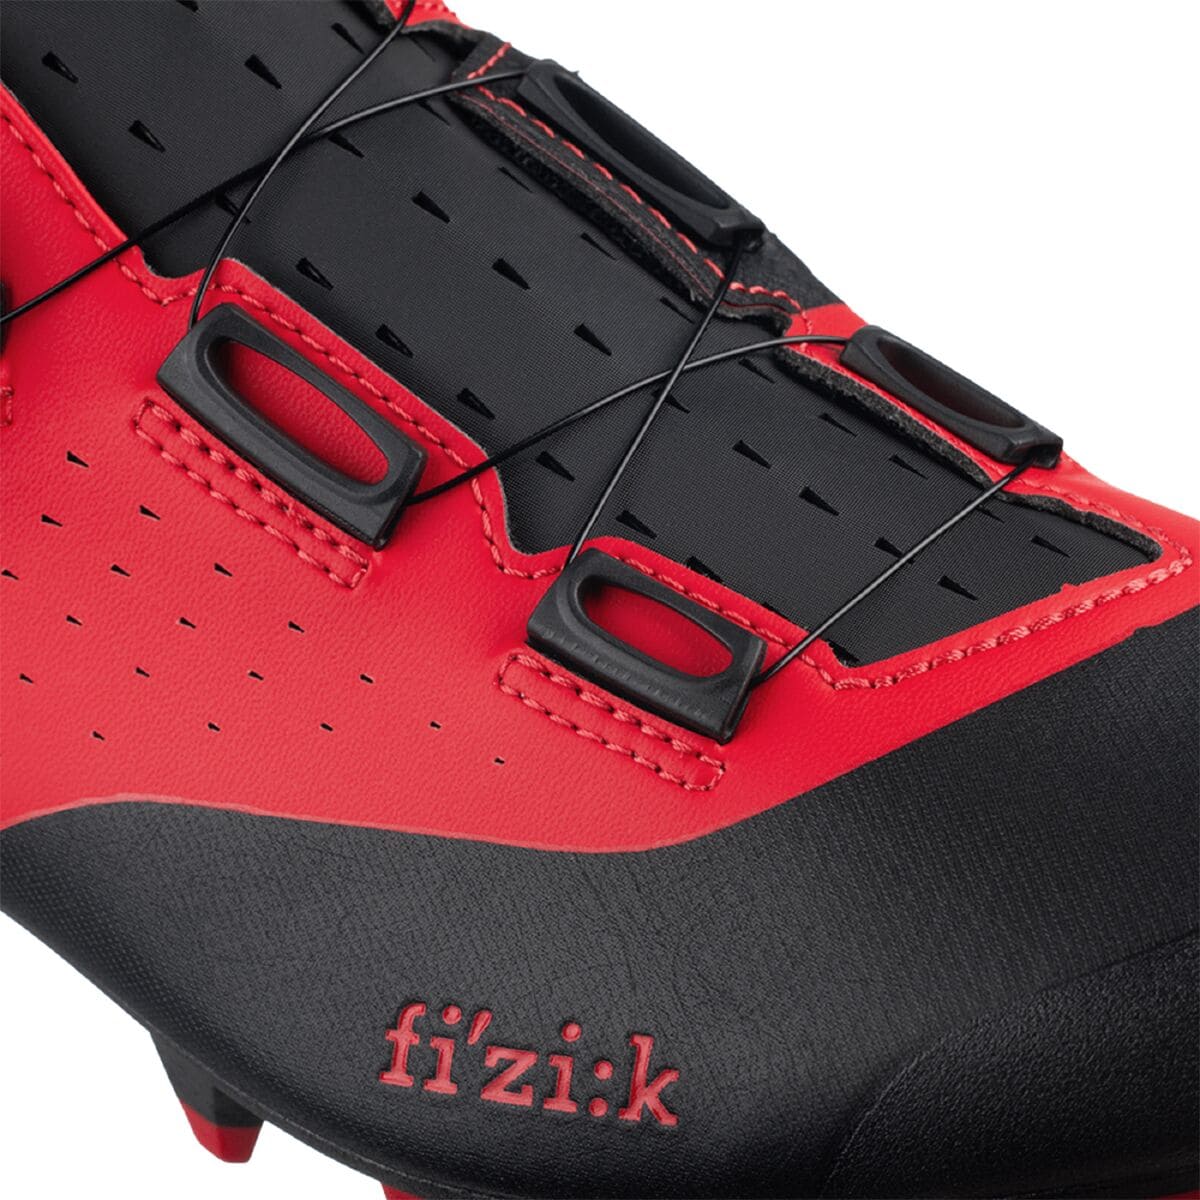 取寄) フィジーク ベント X3 オーバーカーブ サイクリング シュー Fi'zi:k Vento X3 Overcurve Cycling Shoe  Red Black サイクリングシューズ